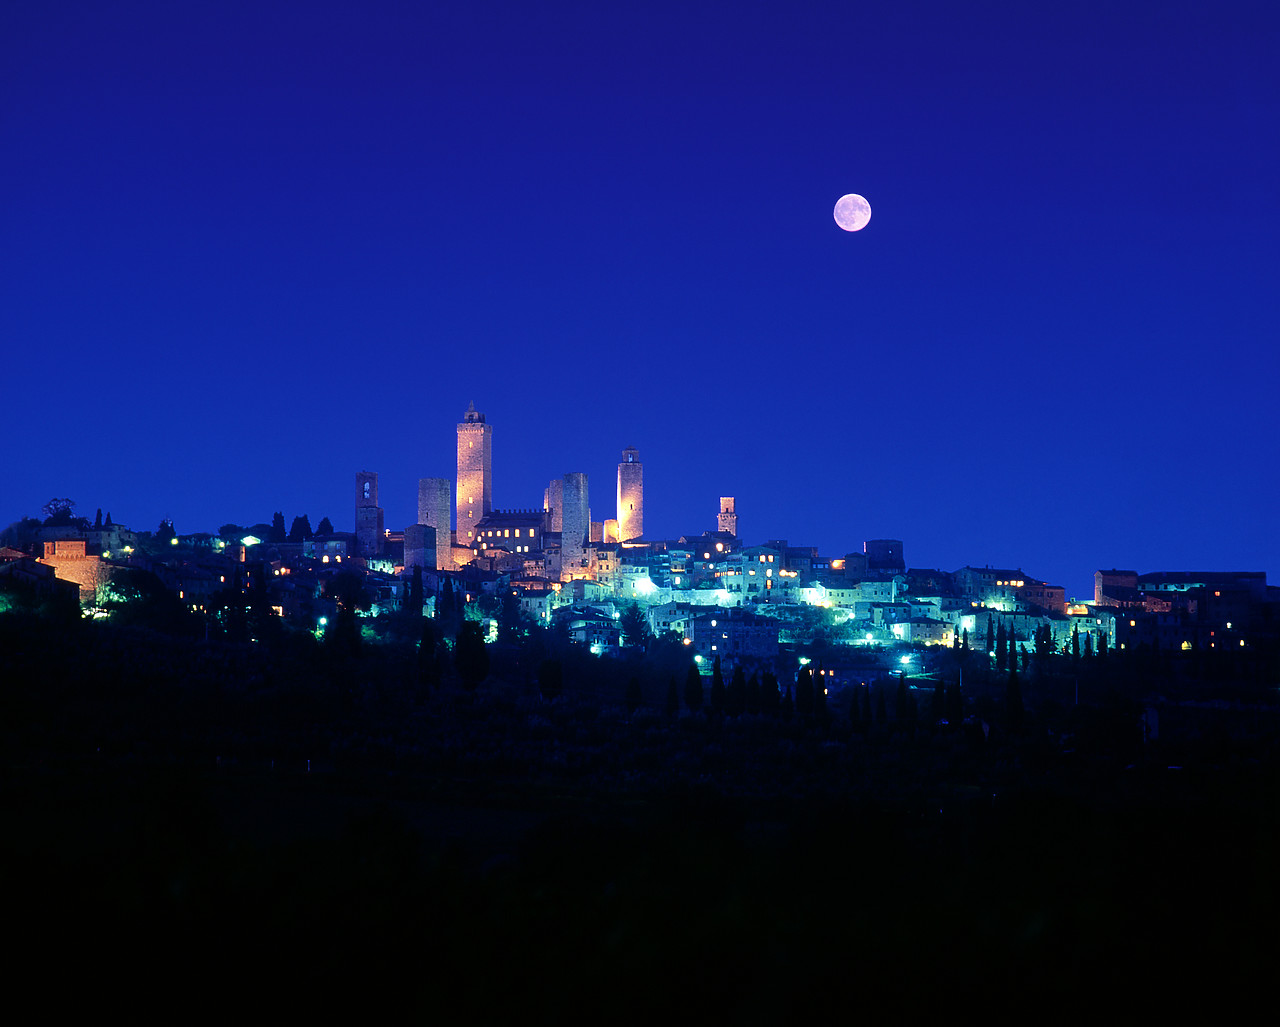 #200328-2 - San Gimignano at Night, Tuscany, Italy